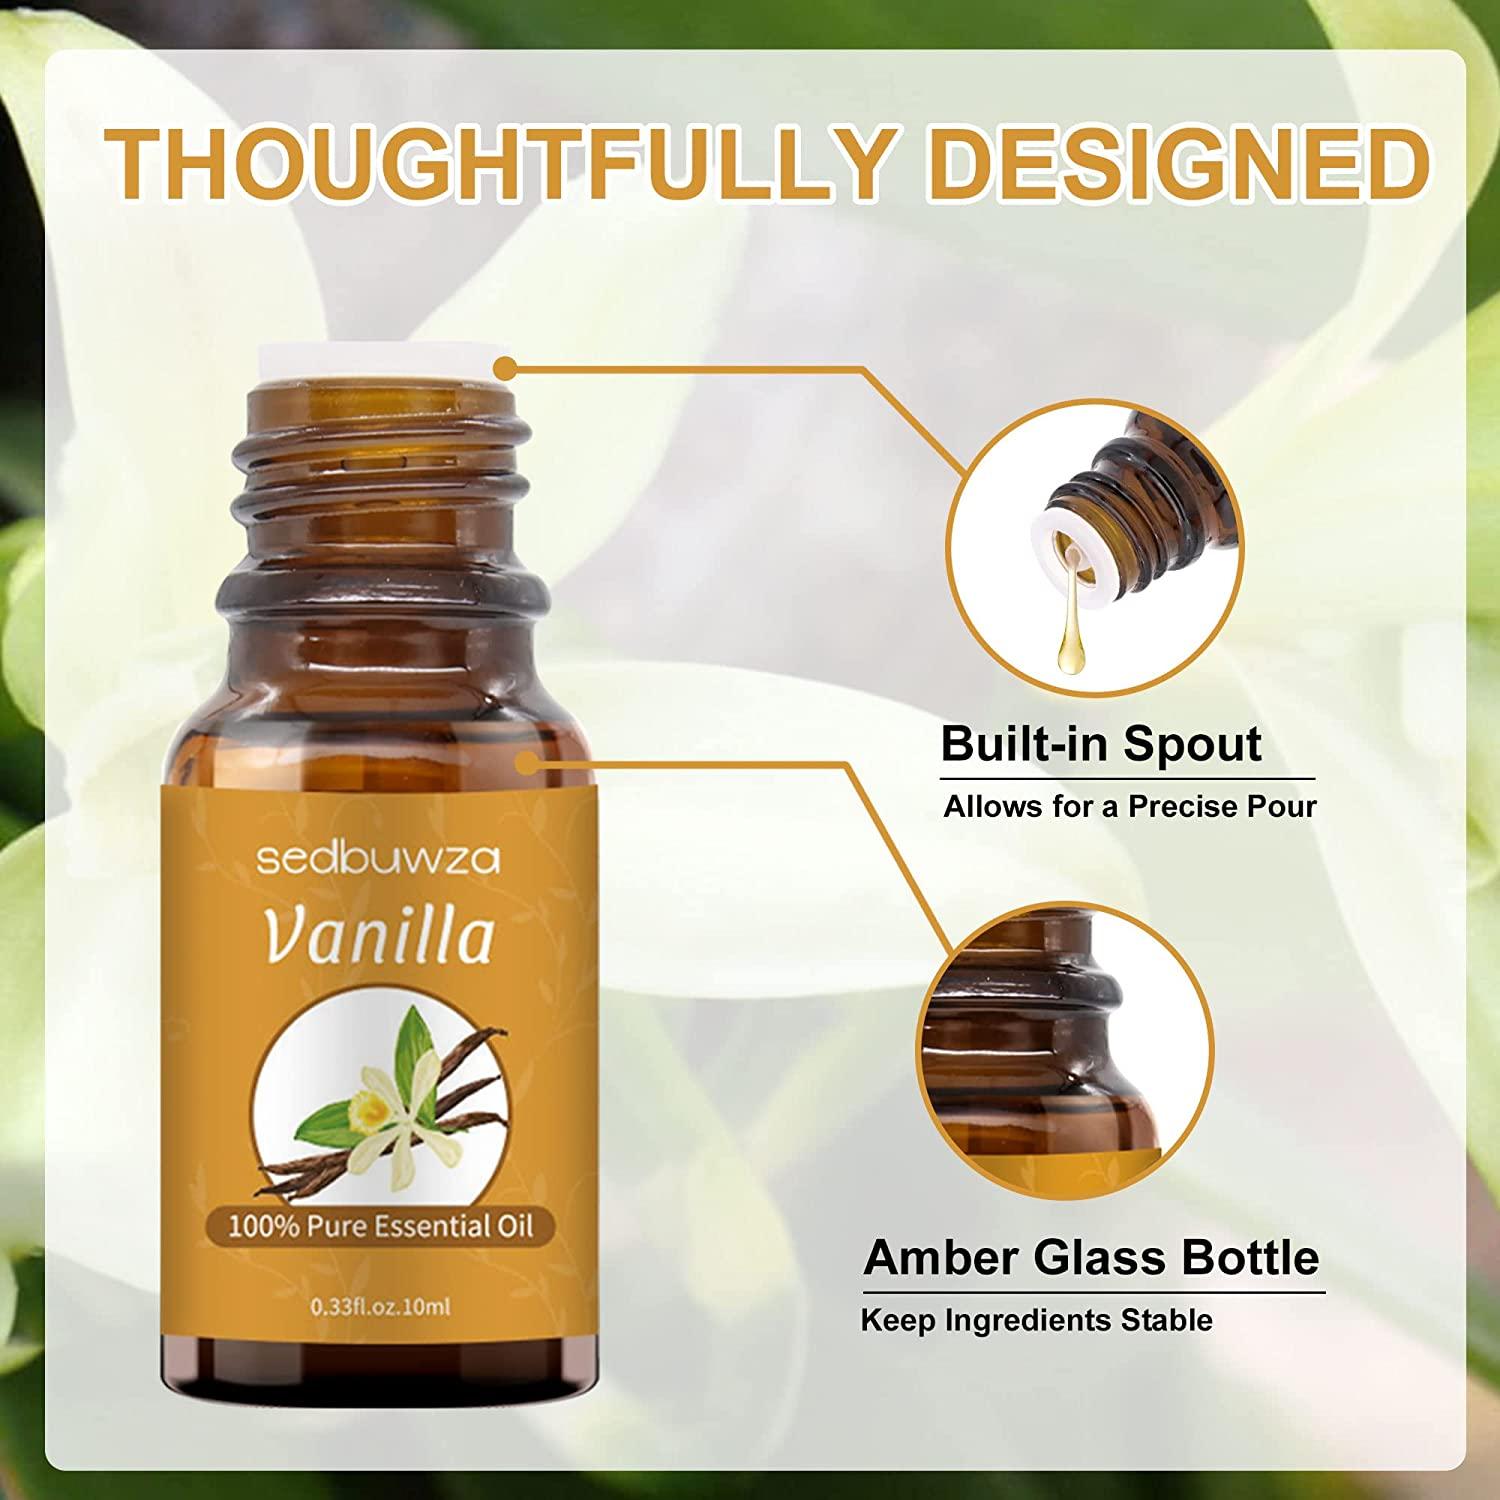 Sedbuwza Vanilla Essential Oil, 100% Pure Organic Vanilla